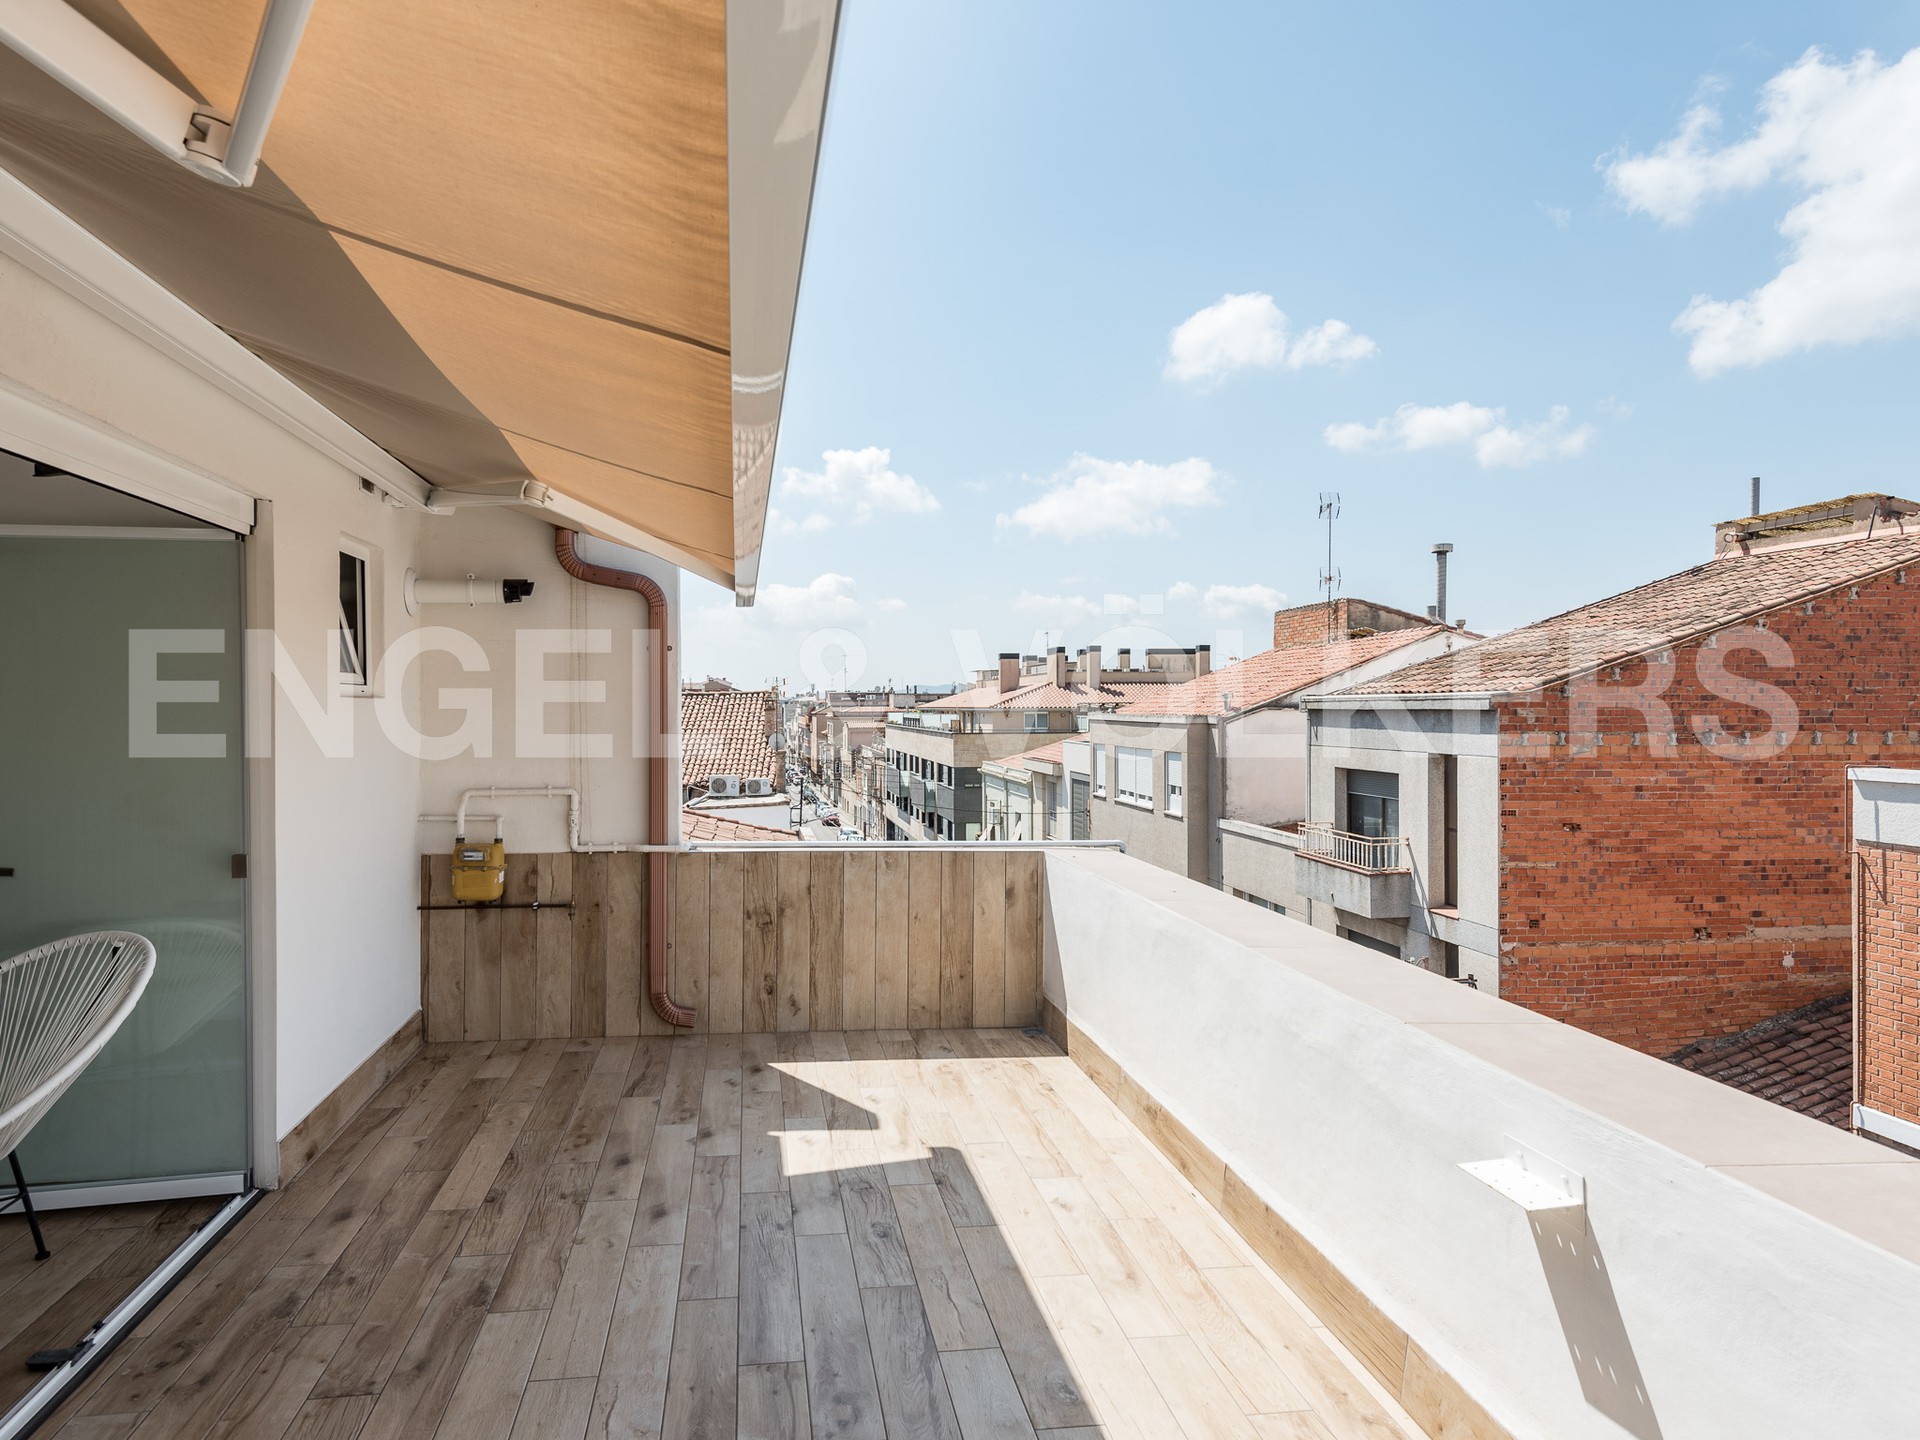 Casa a reformar en el centro de Sabadell